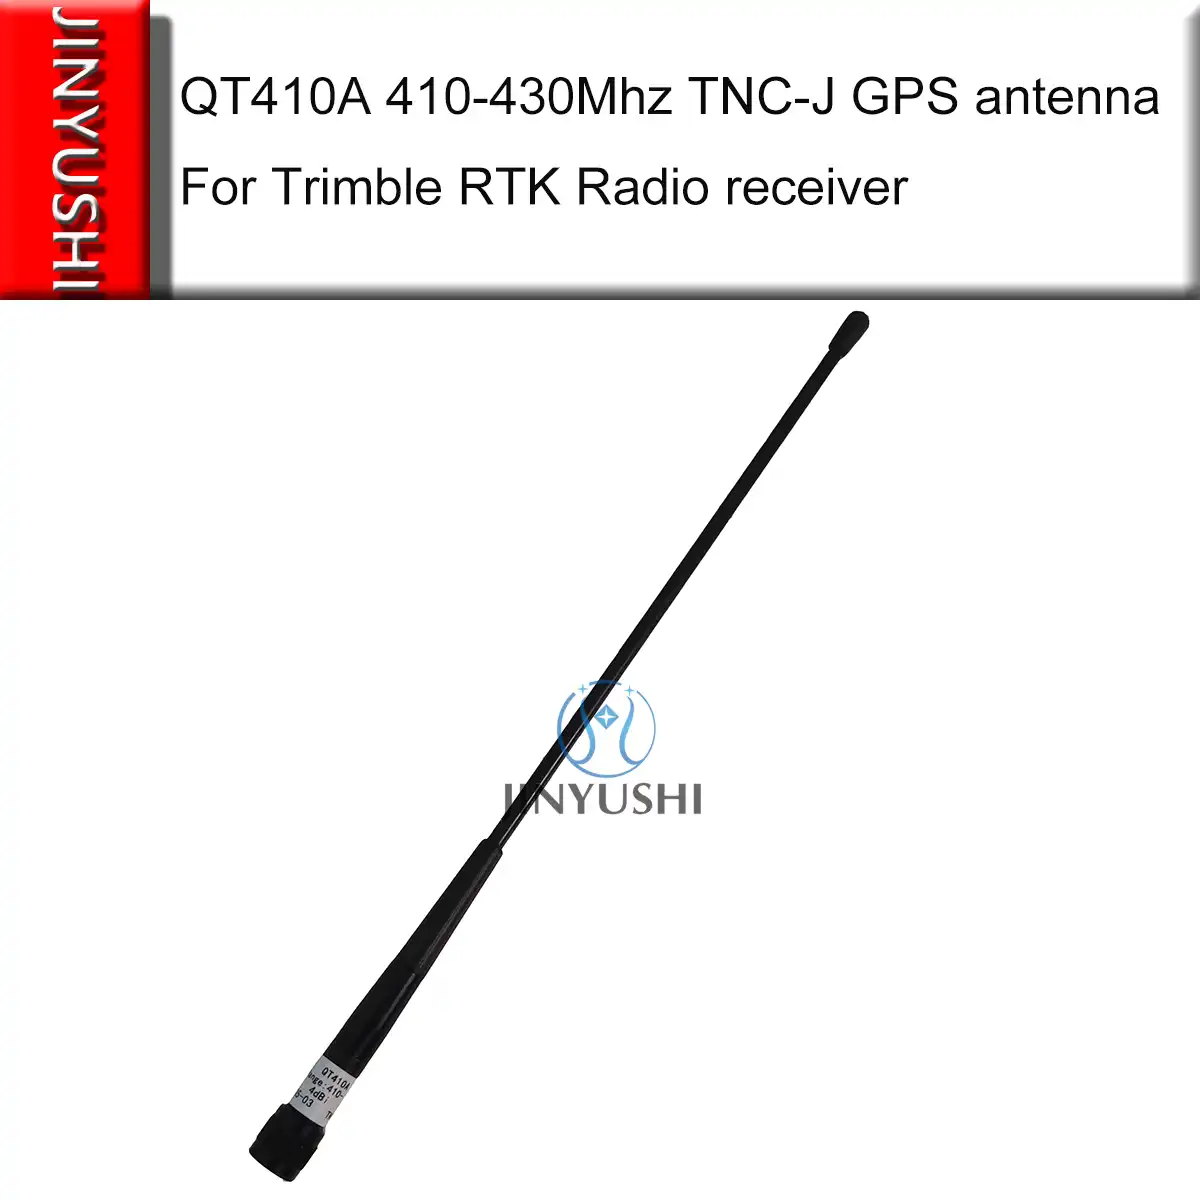 gps tnc-j transmitter surveying antenna 31cm 410-430mhz qt410a 4